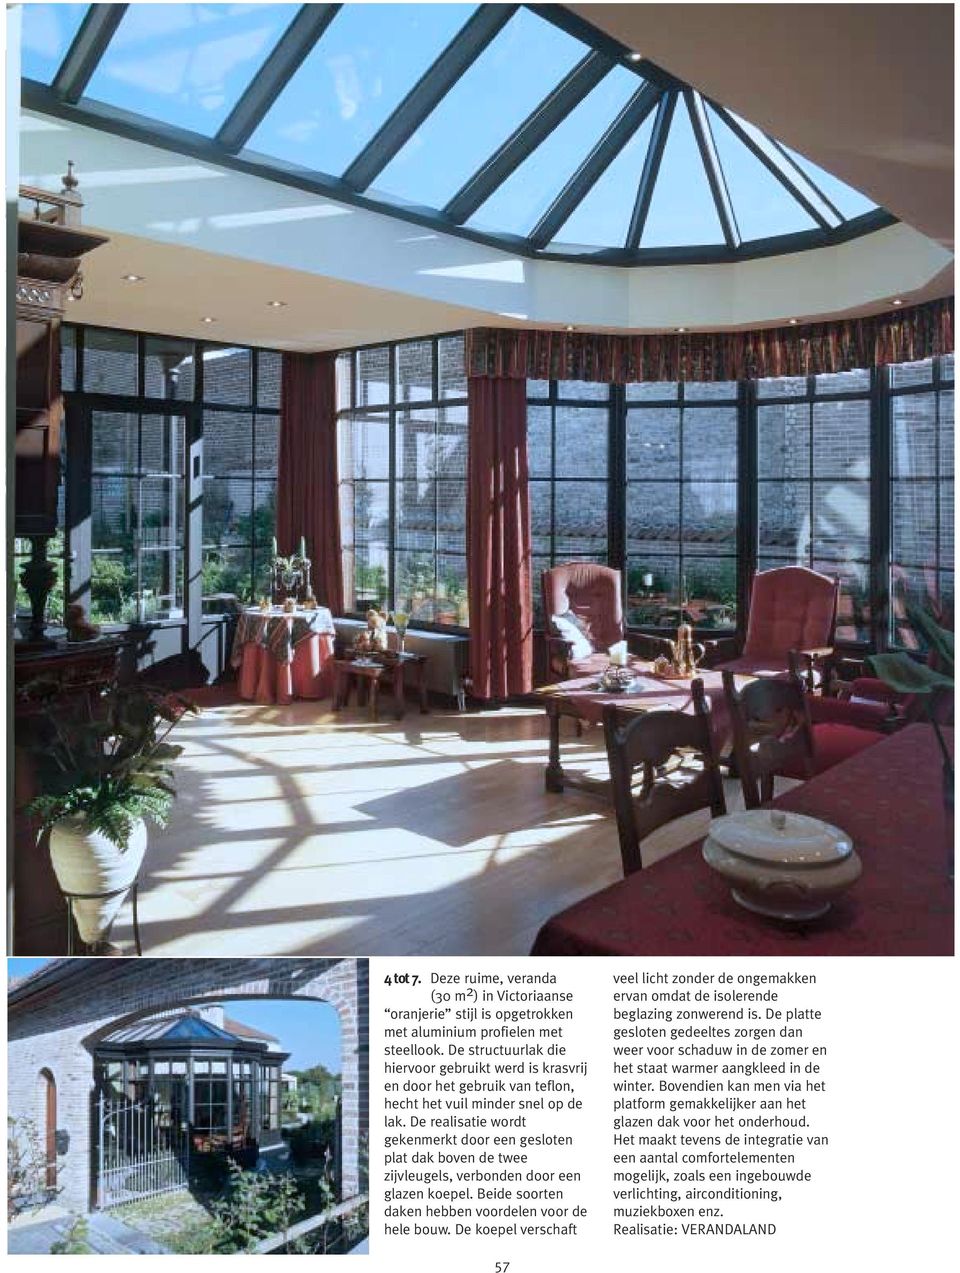 De realisatie wordt gekenmerkt door een gesloten plat dak boven de twee zijvleugels, verbonden door een glazen koepel. Beide soorten daken hebben voordelen voor de hele bouw.